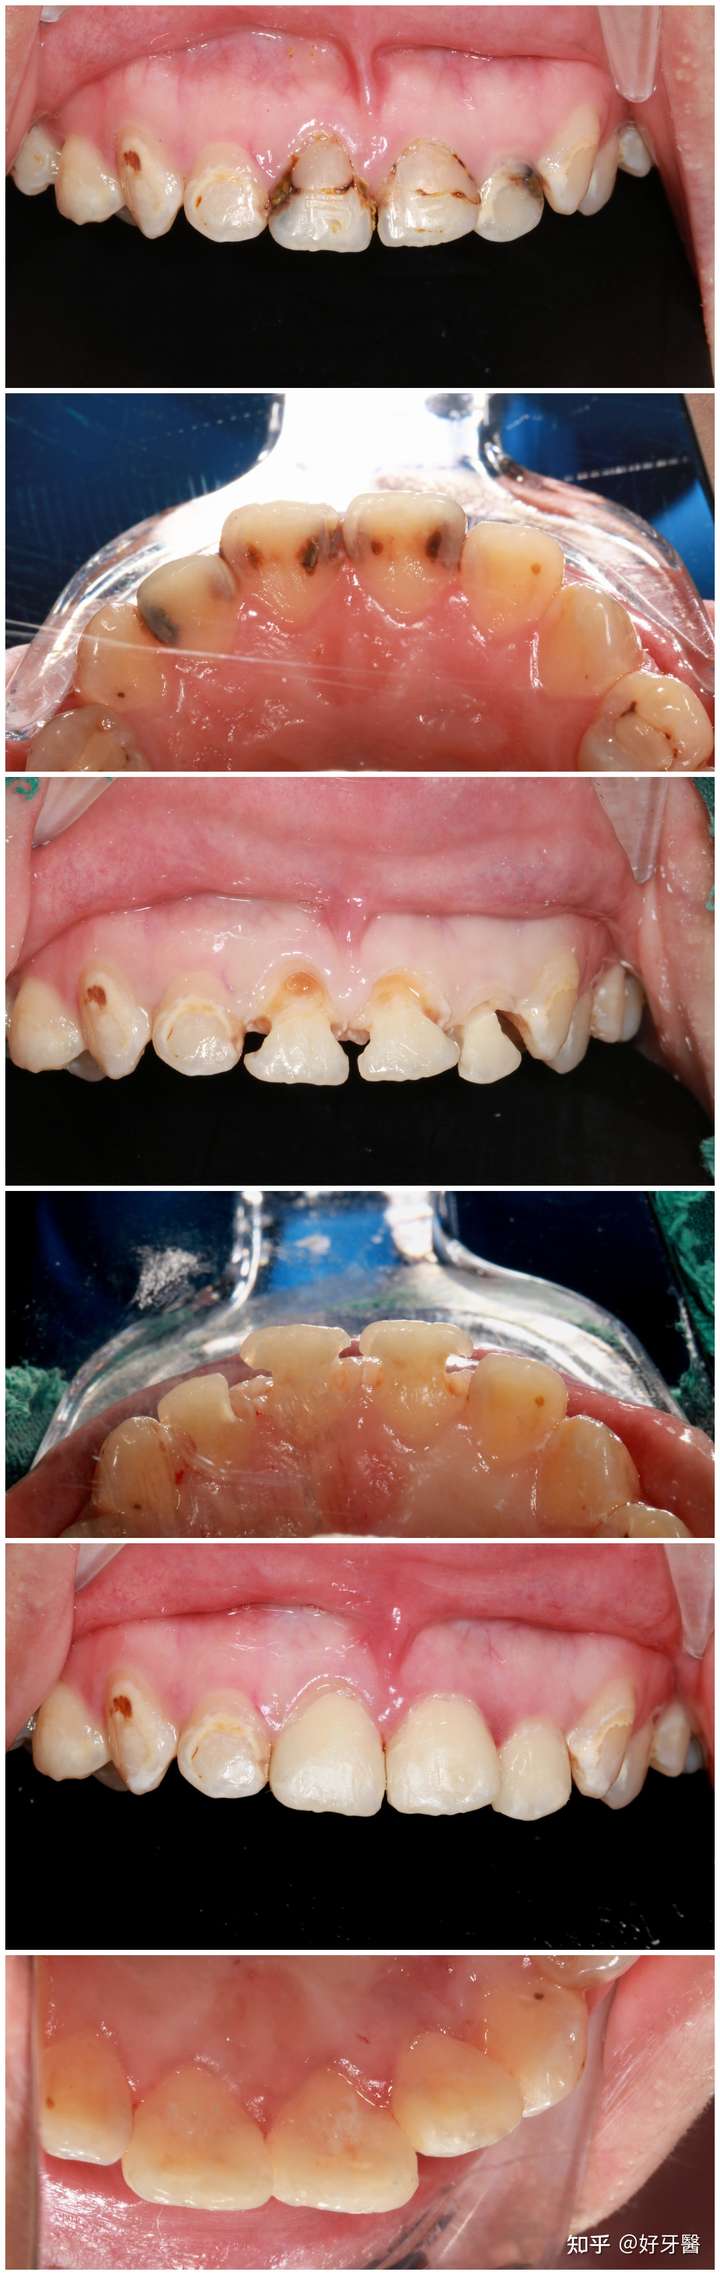 严重的龋齿也可以用树脂补牙材料补得很美观,不需要根管治疗加牙冠.